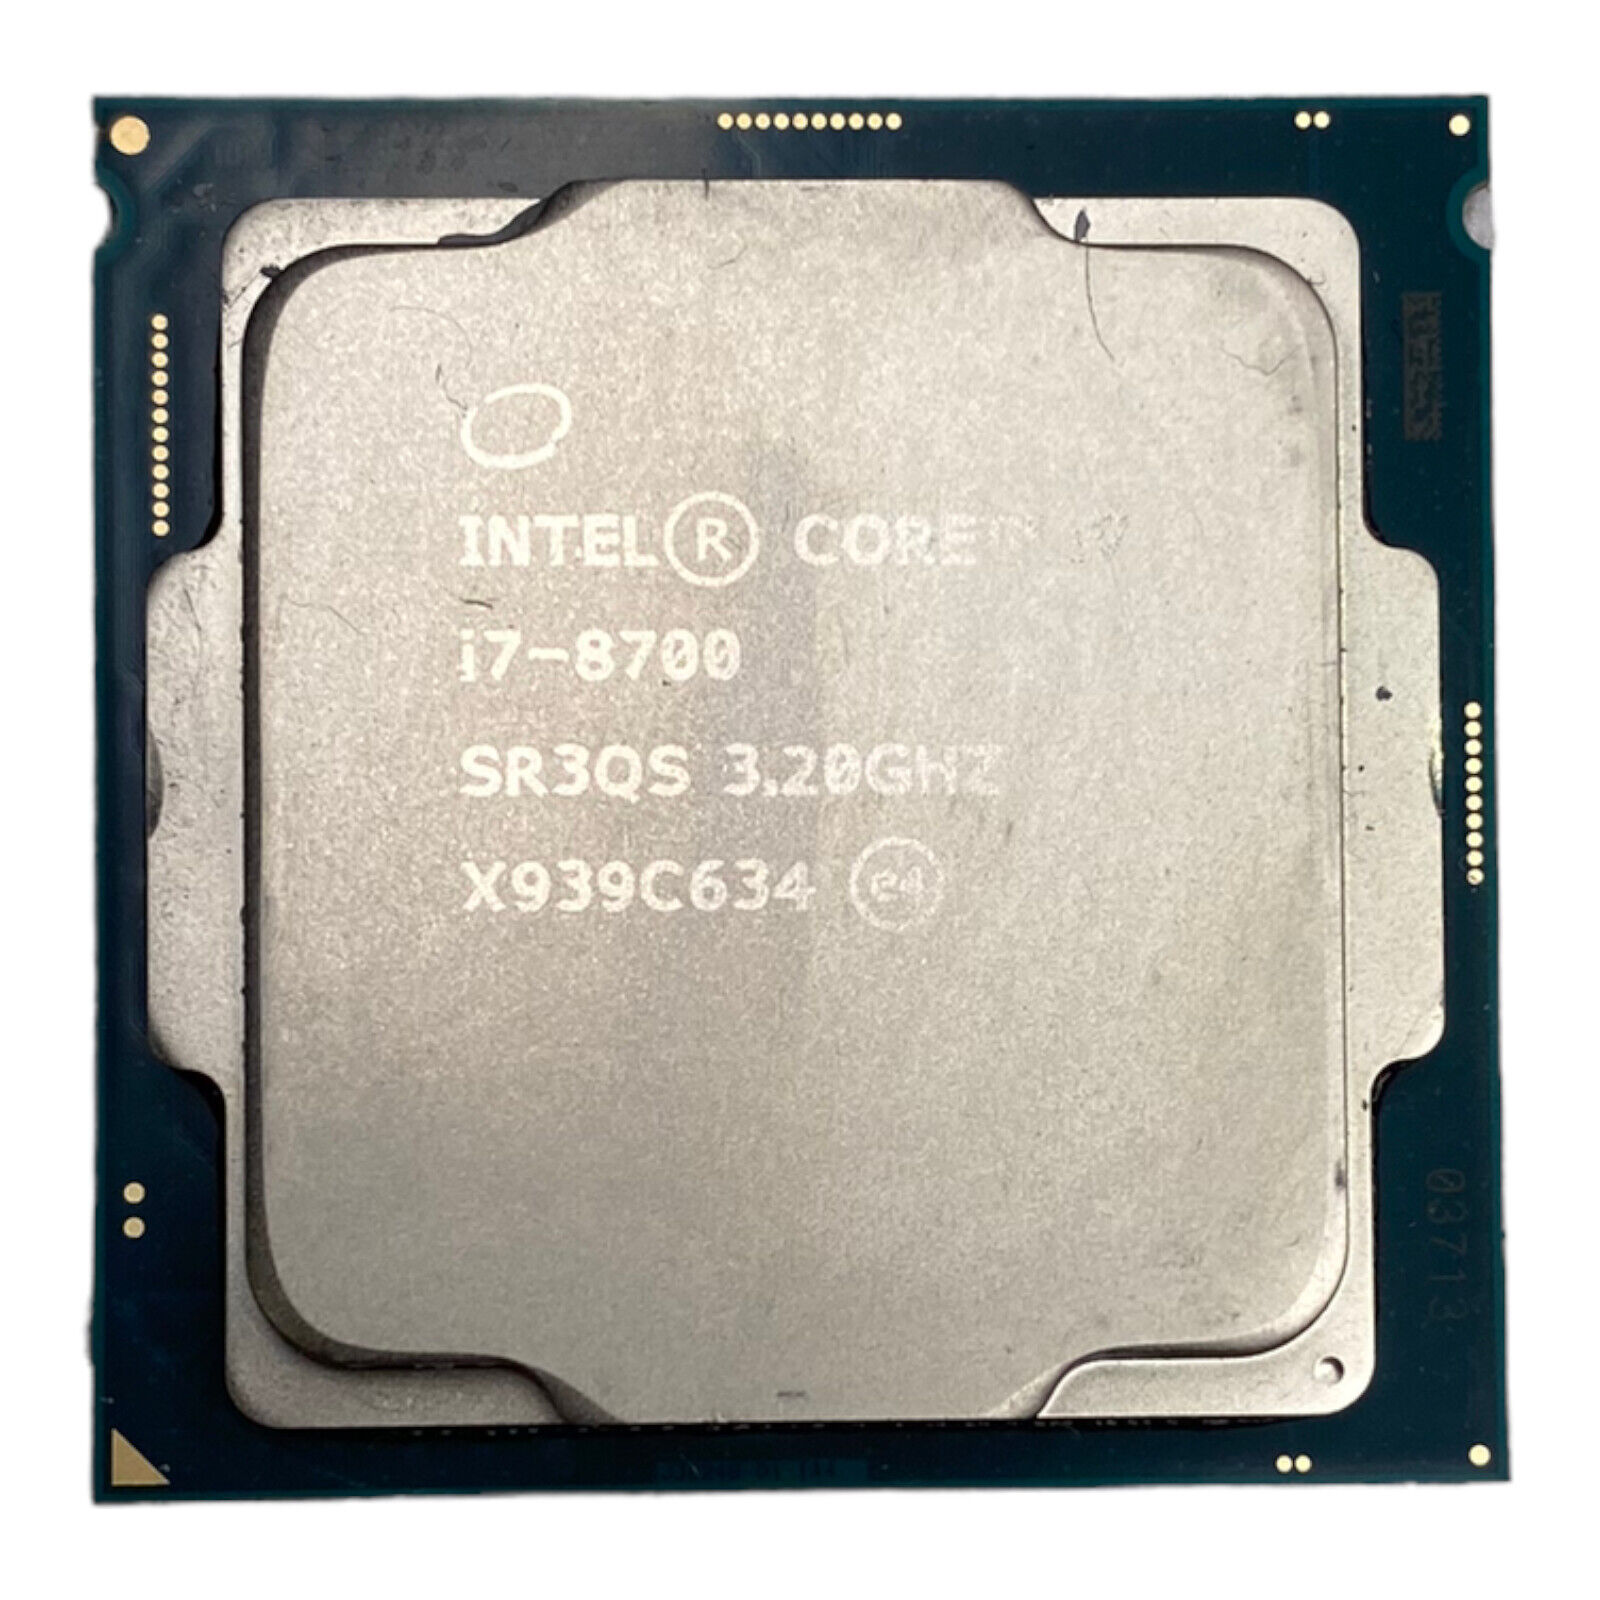 Intel core i7-8700 3.2GHZ SR3QS Desktop CPU Processor LGA1151